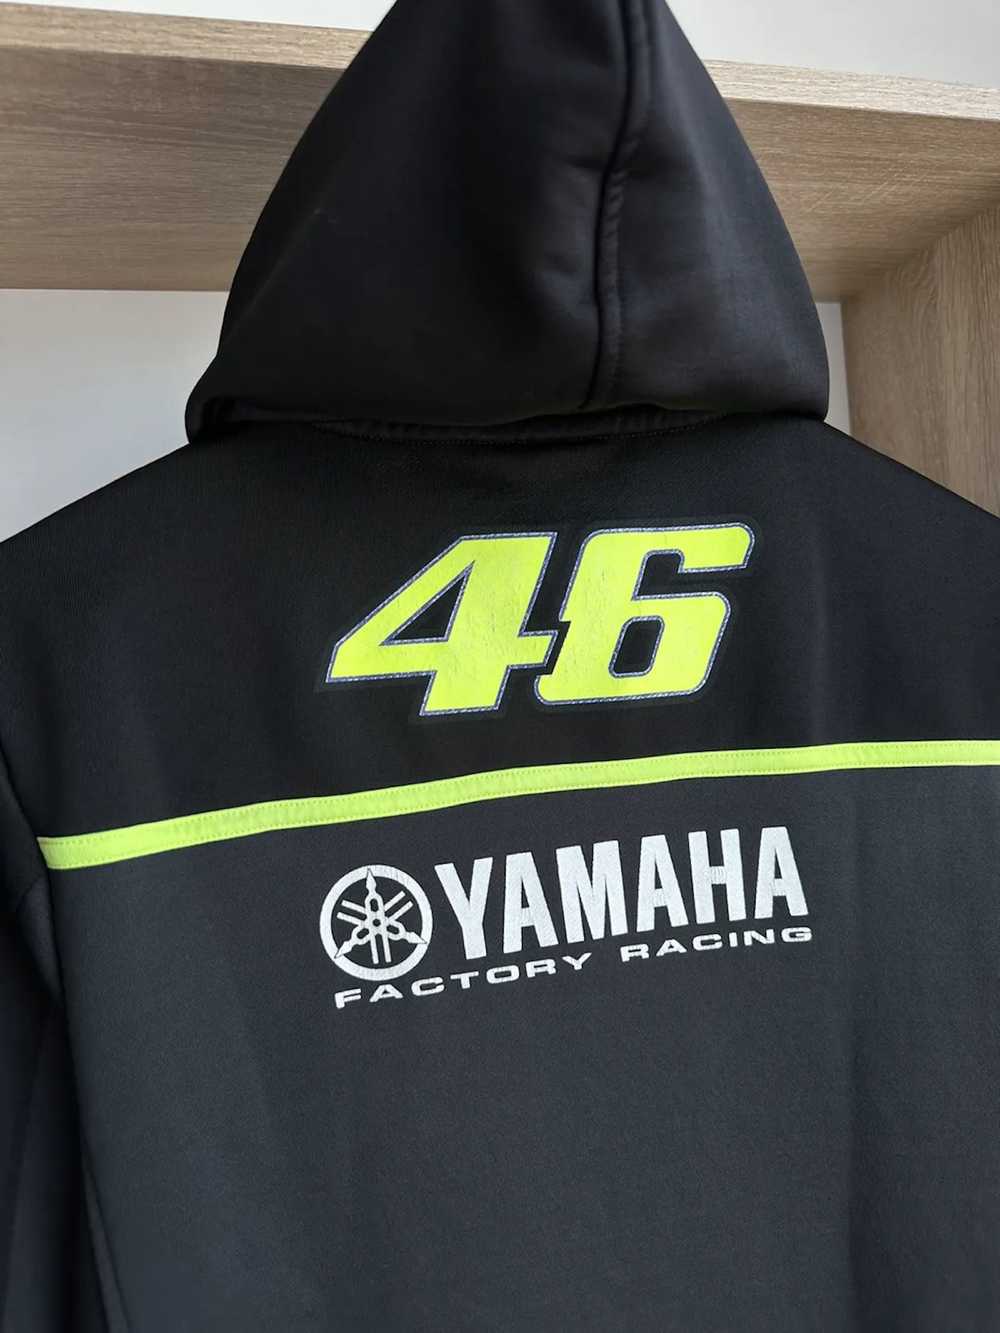 Racing × Vintage × Yamaha Vintage Yamaha Factory … - image 8